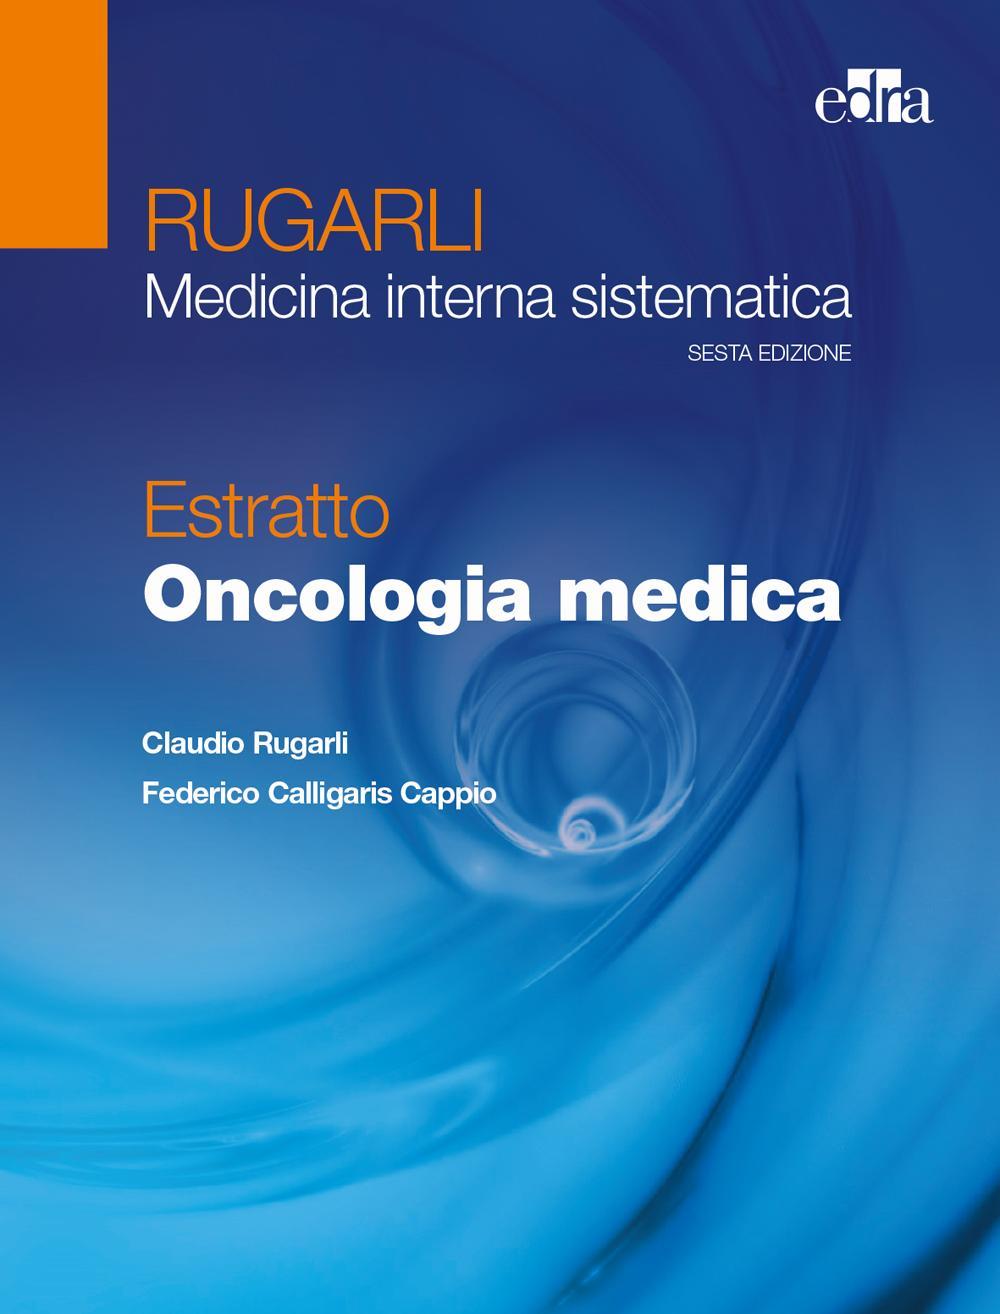 Könyv Rugarli. Medicina interna sistematica. Estratto: Oncologia medica Claudio Rugarli